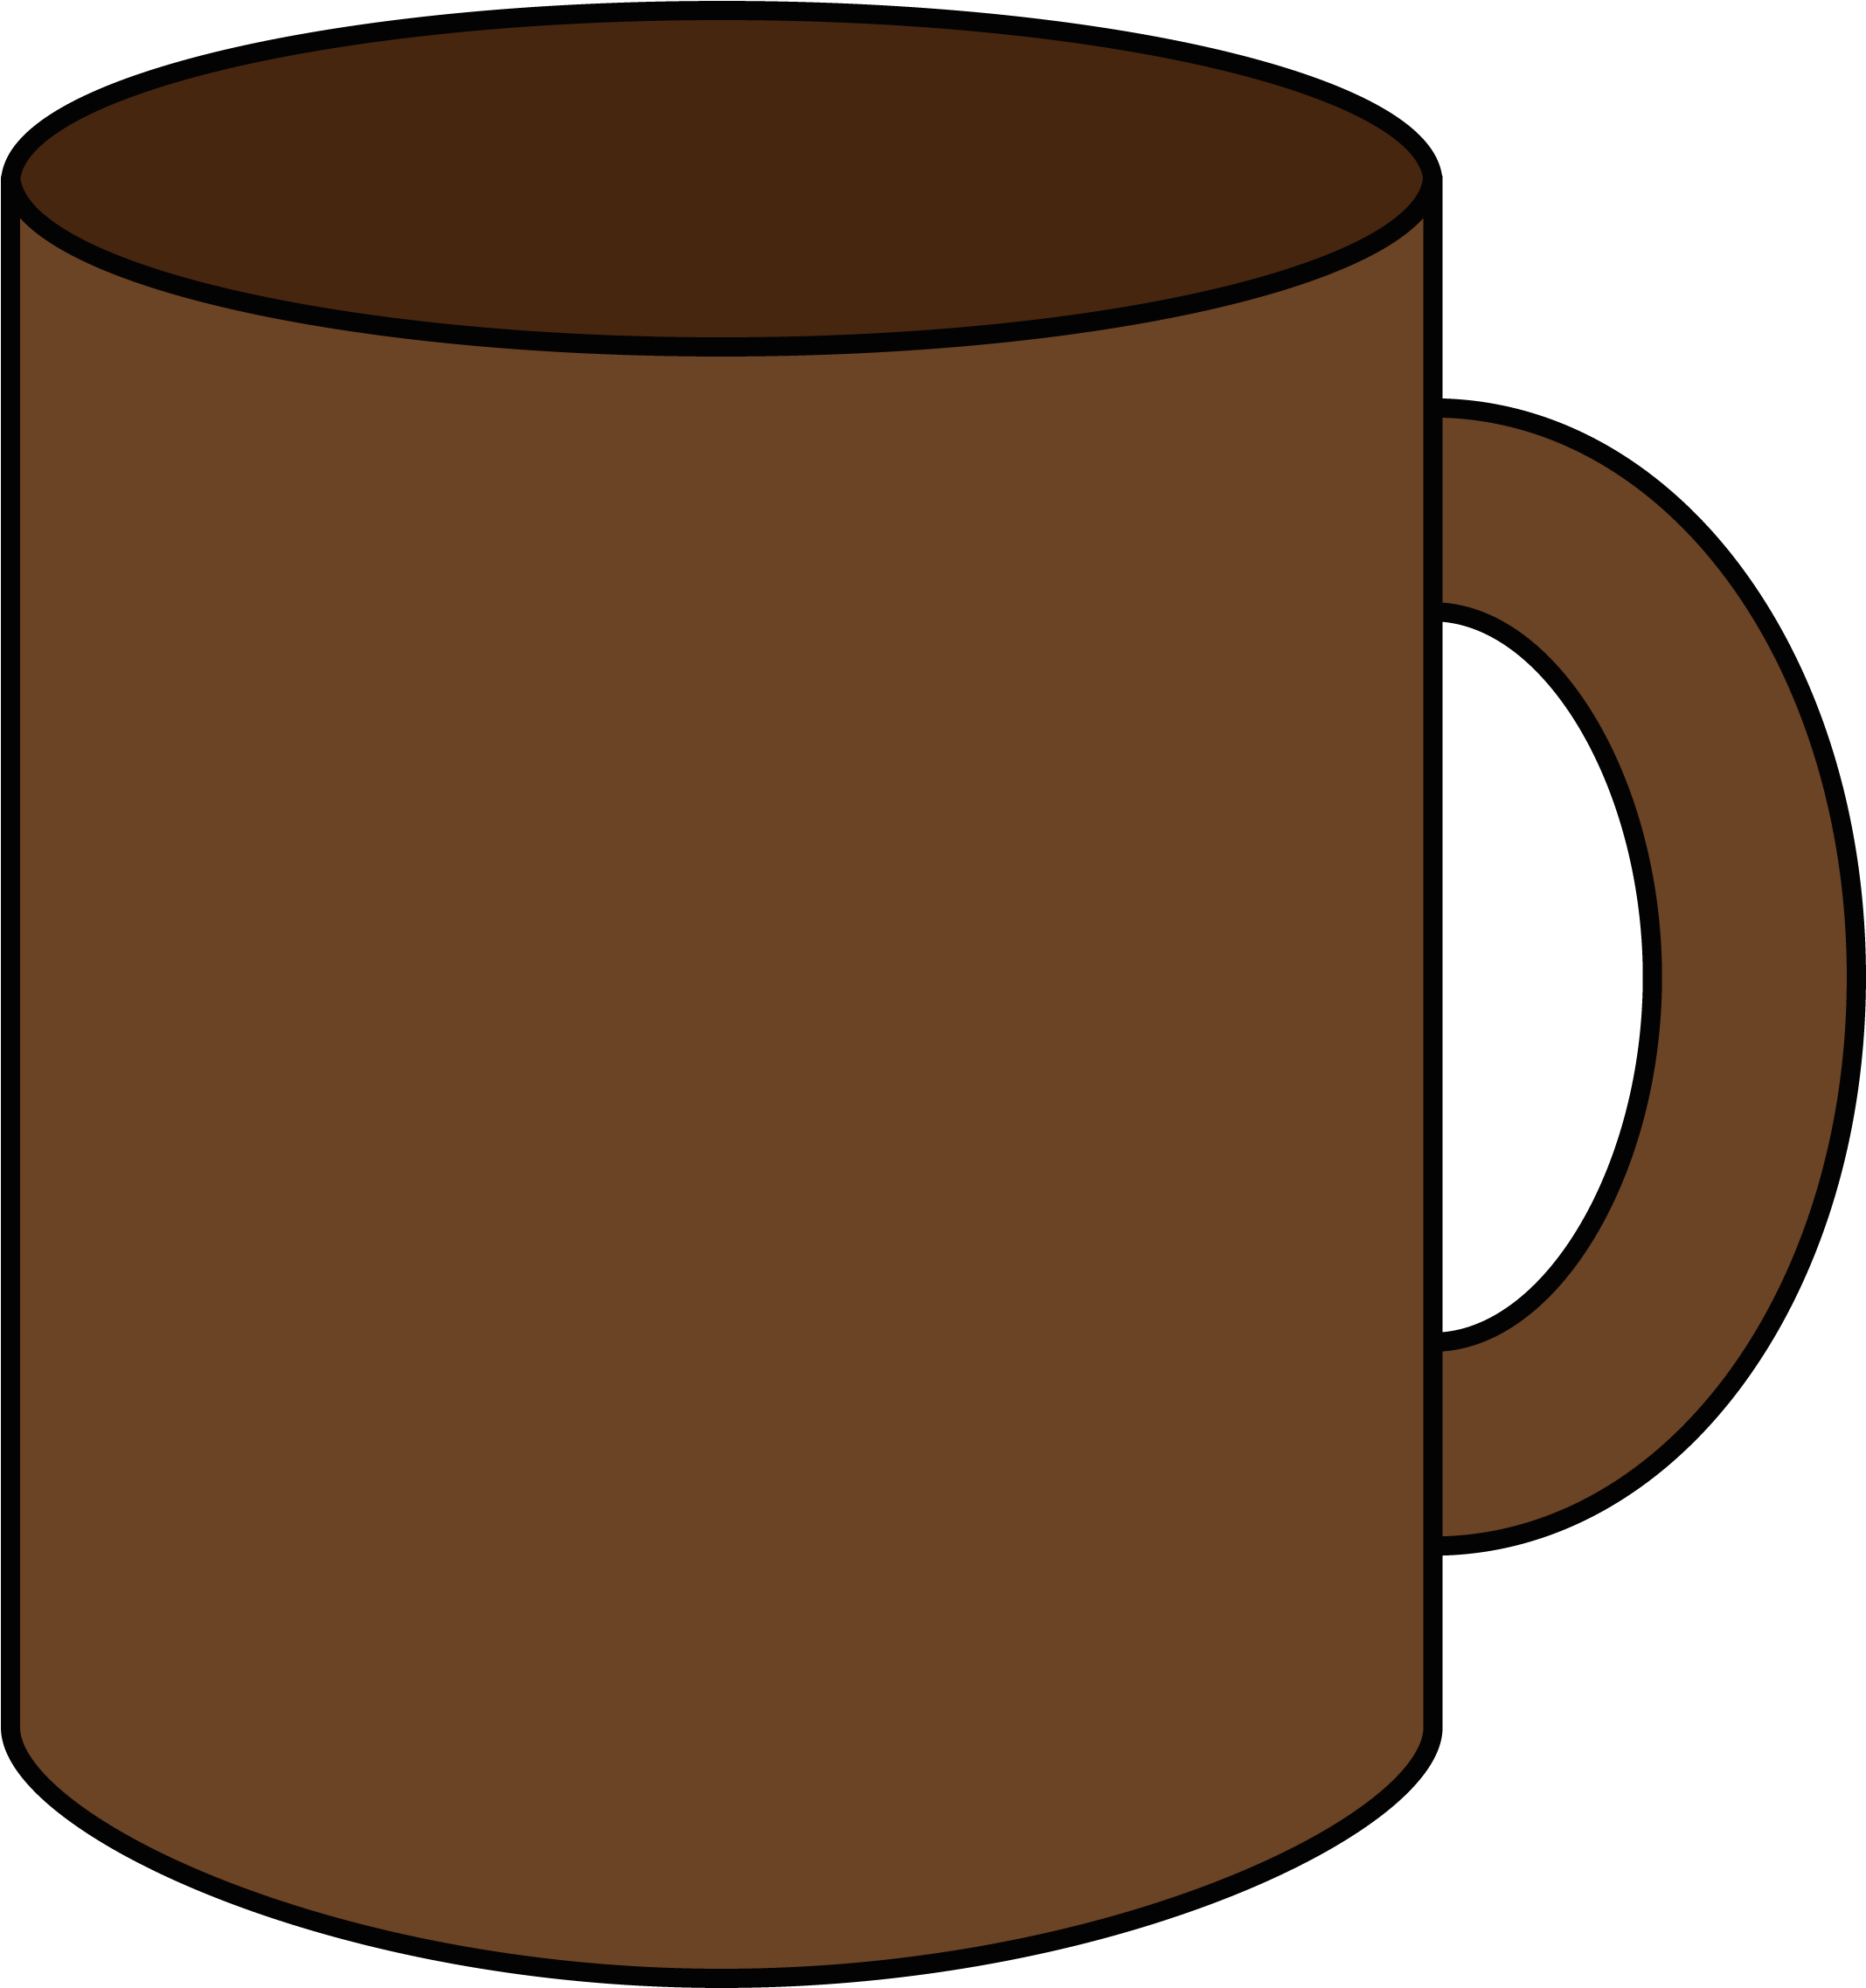 Ch B *✿* Clipart ✿ Loza Coffee Cups, Tea Cups, Friendship, - Clip Art (2212x2358)